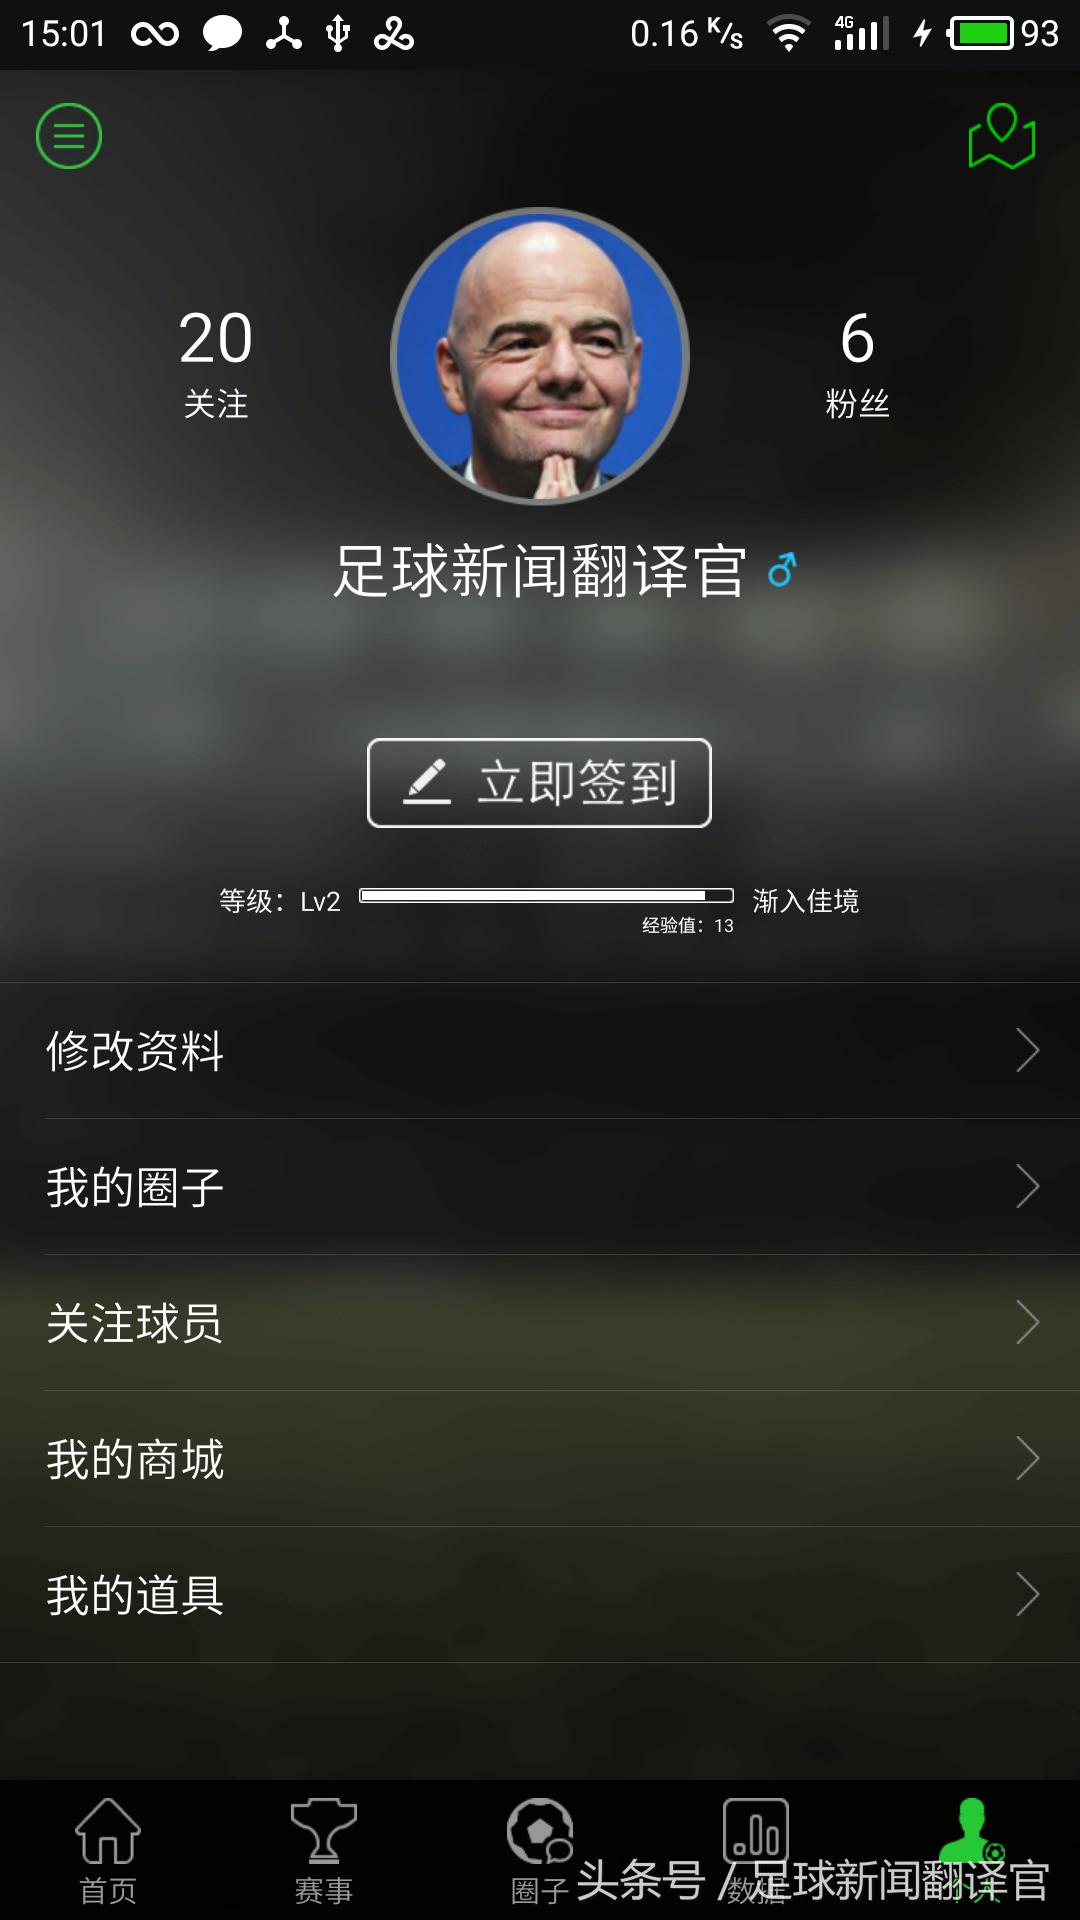 中超公司app 中超俱乐部APP使用及评测(28)